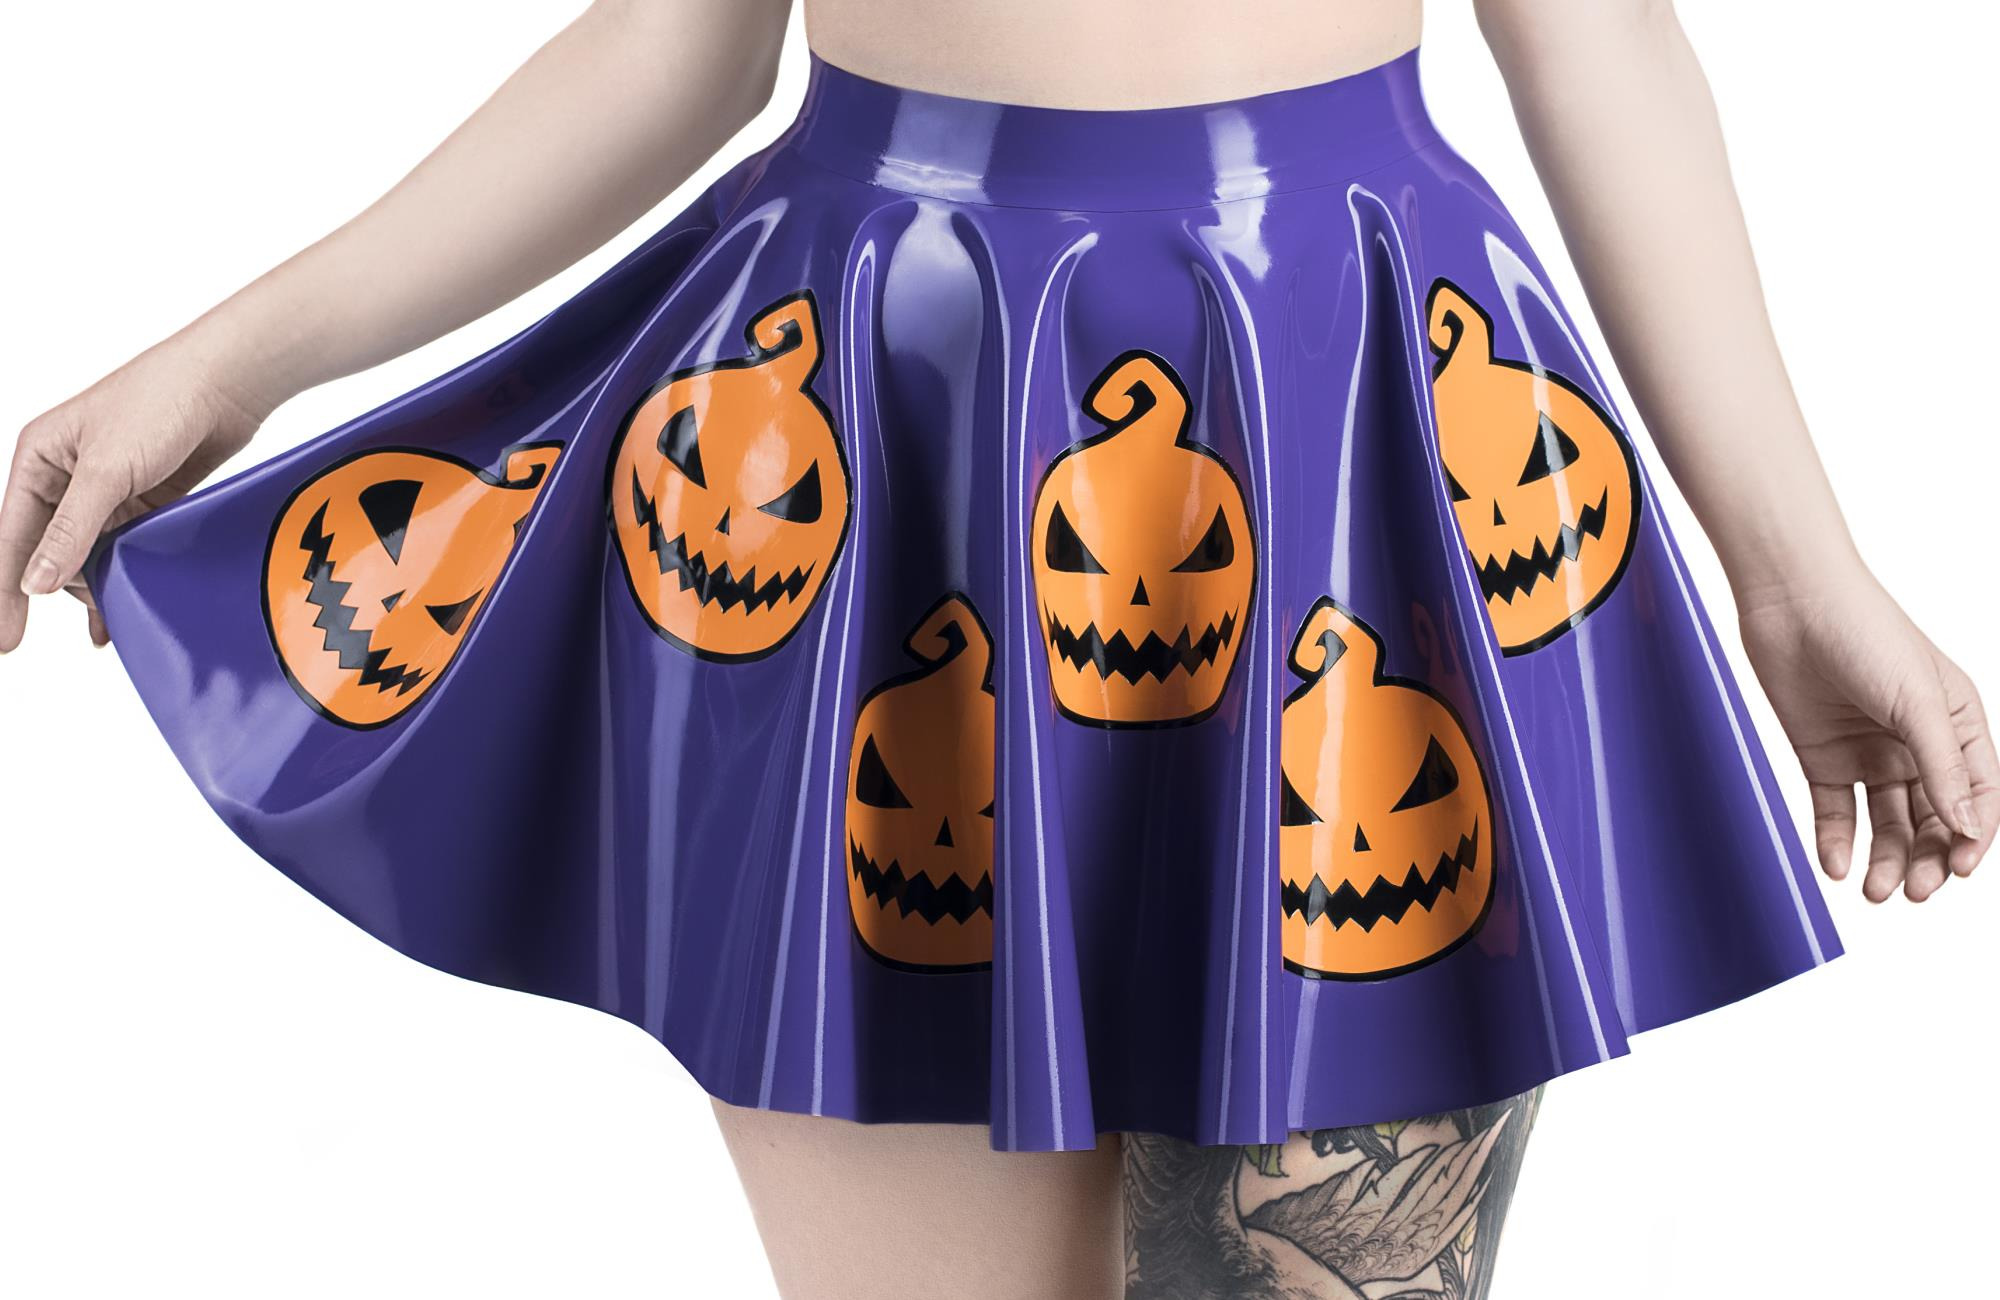 Spooky Sale: Užijte si Halloween s 20% slevou na všechny PVC produkty!